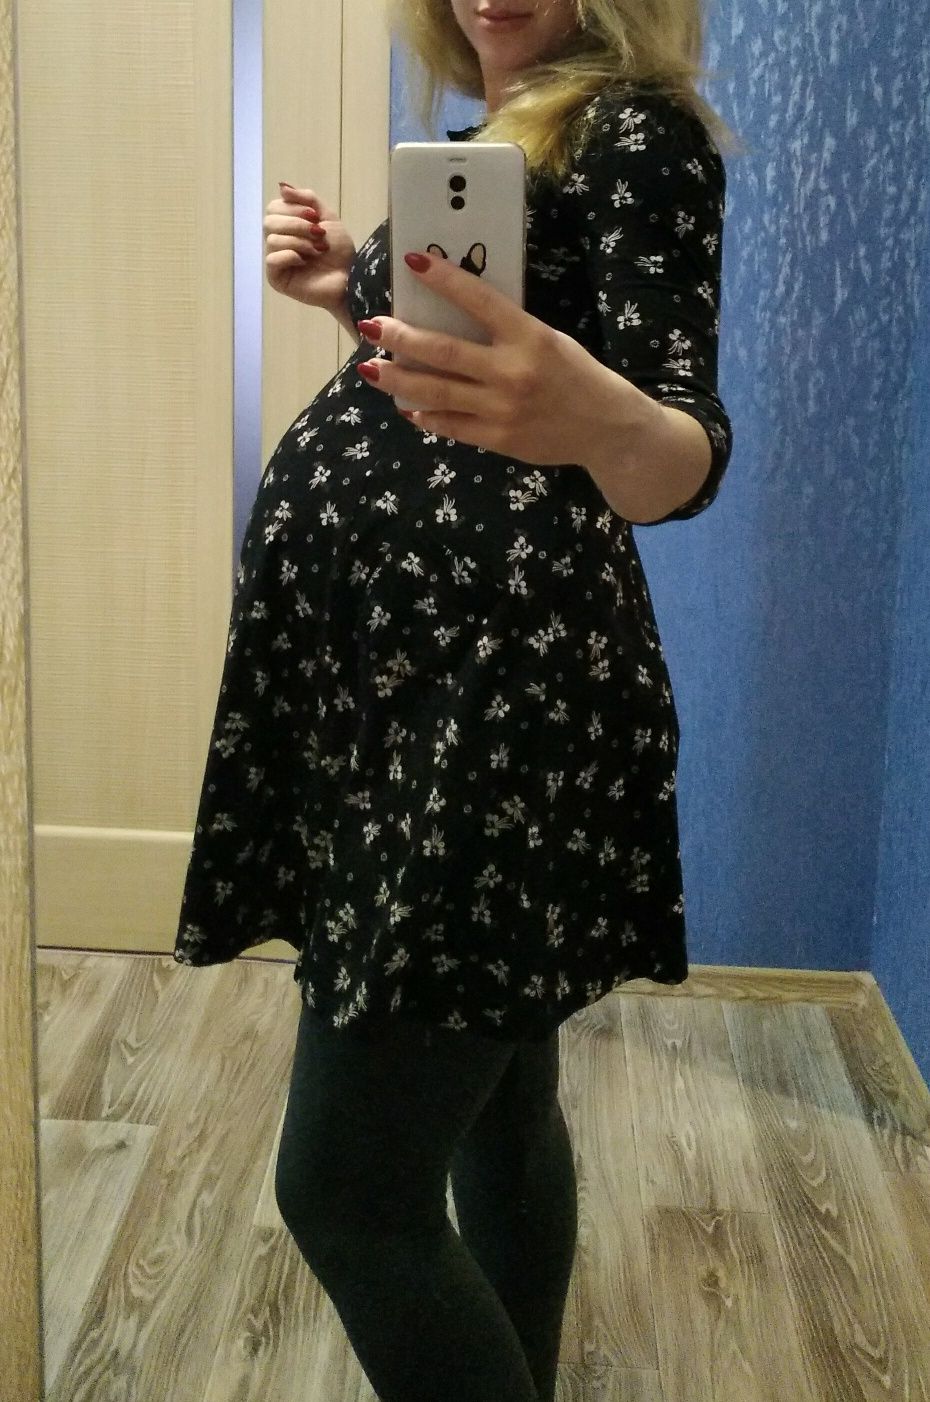 Платье для беременных